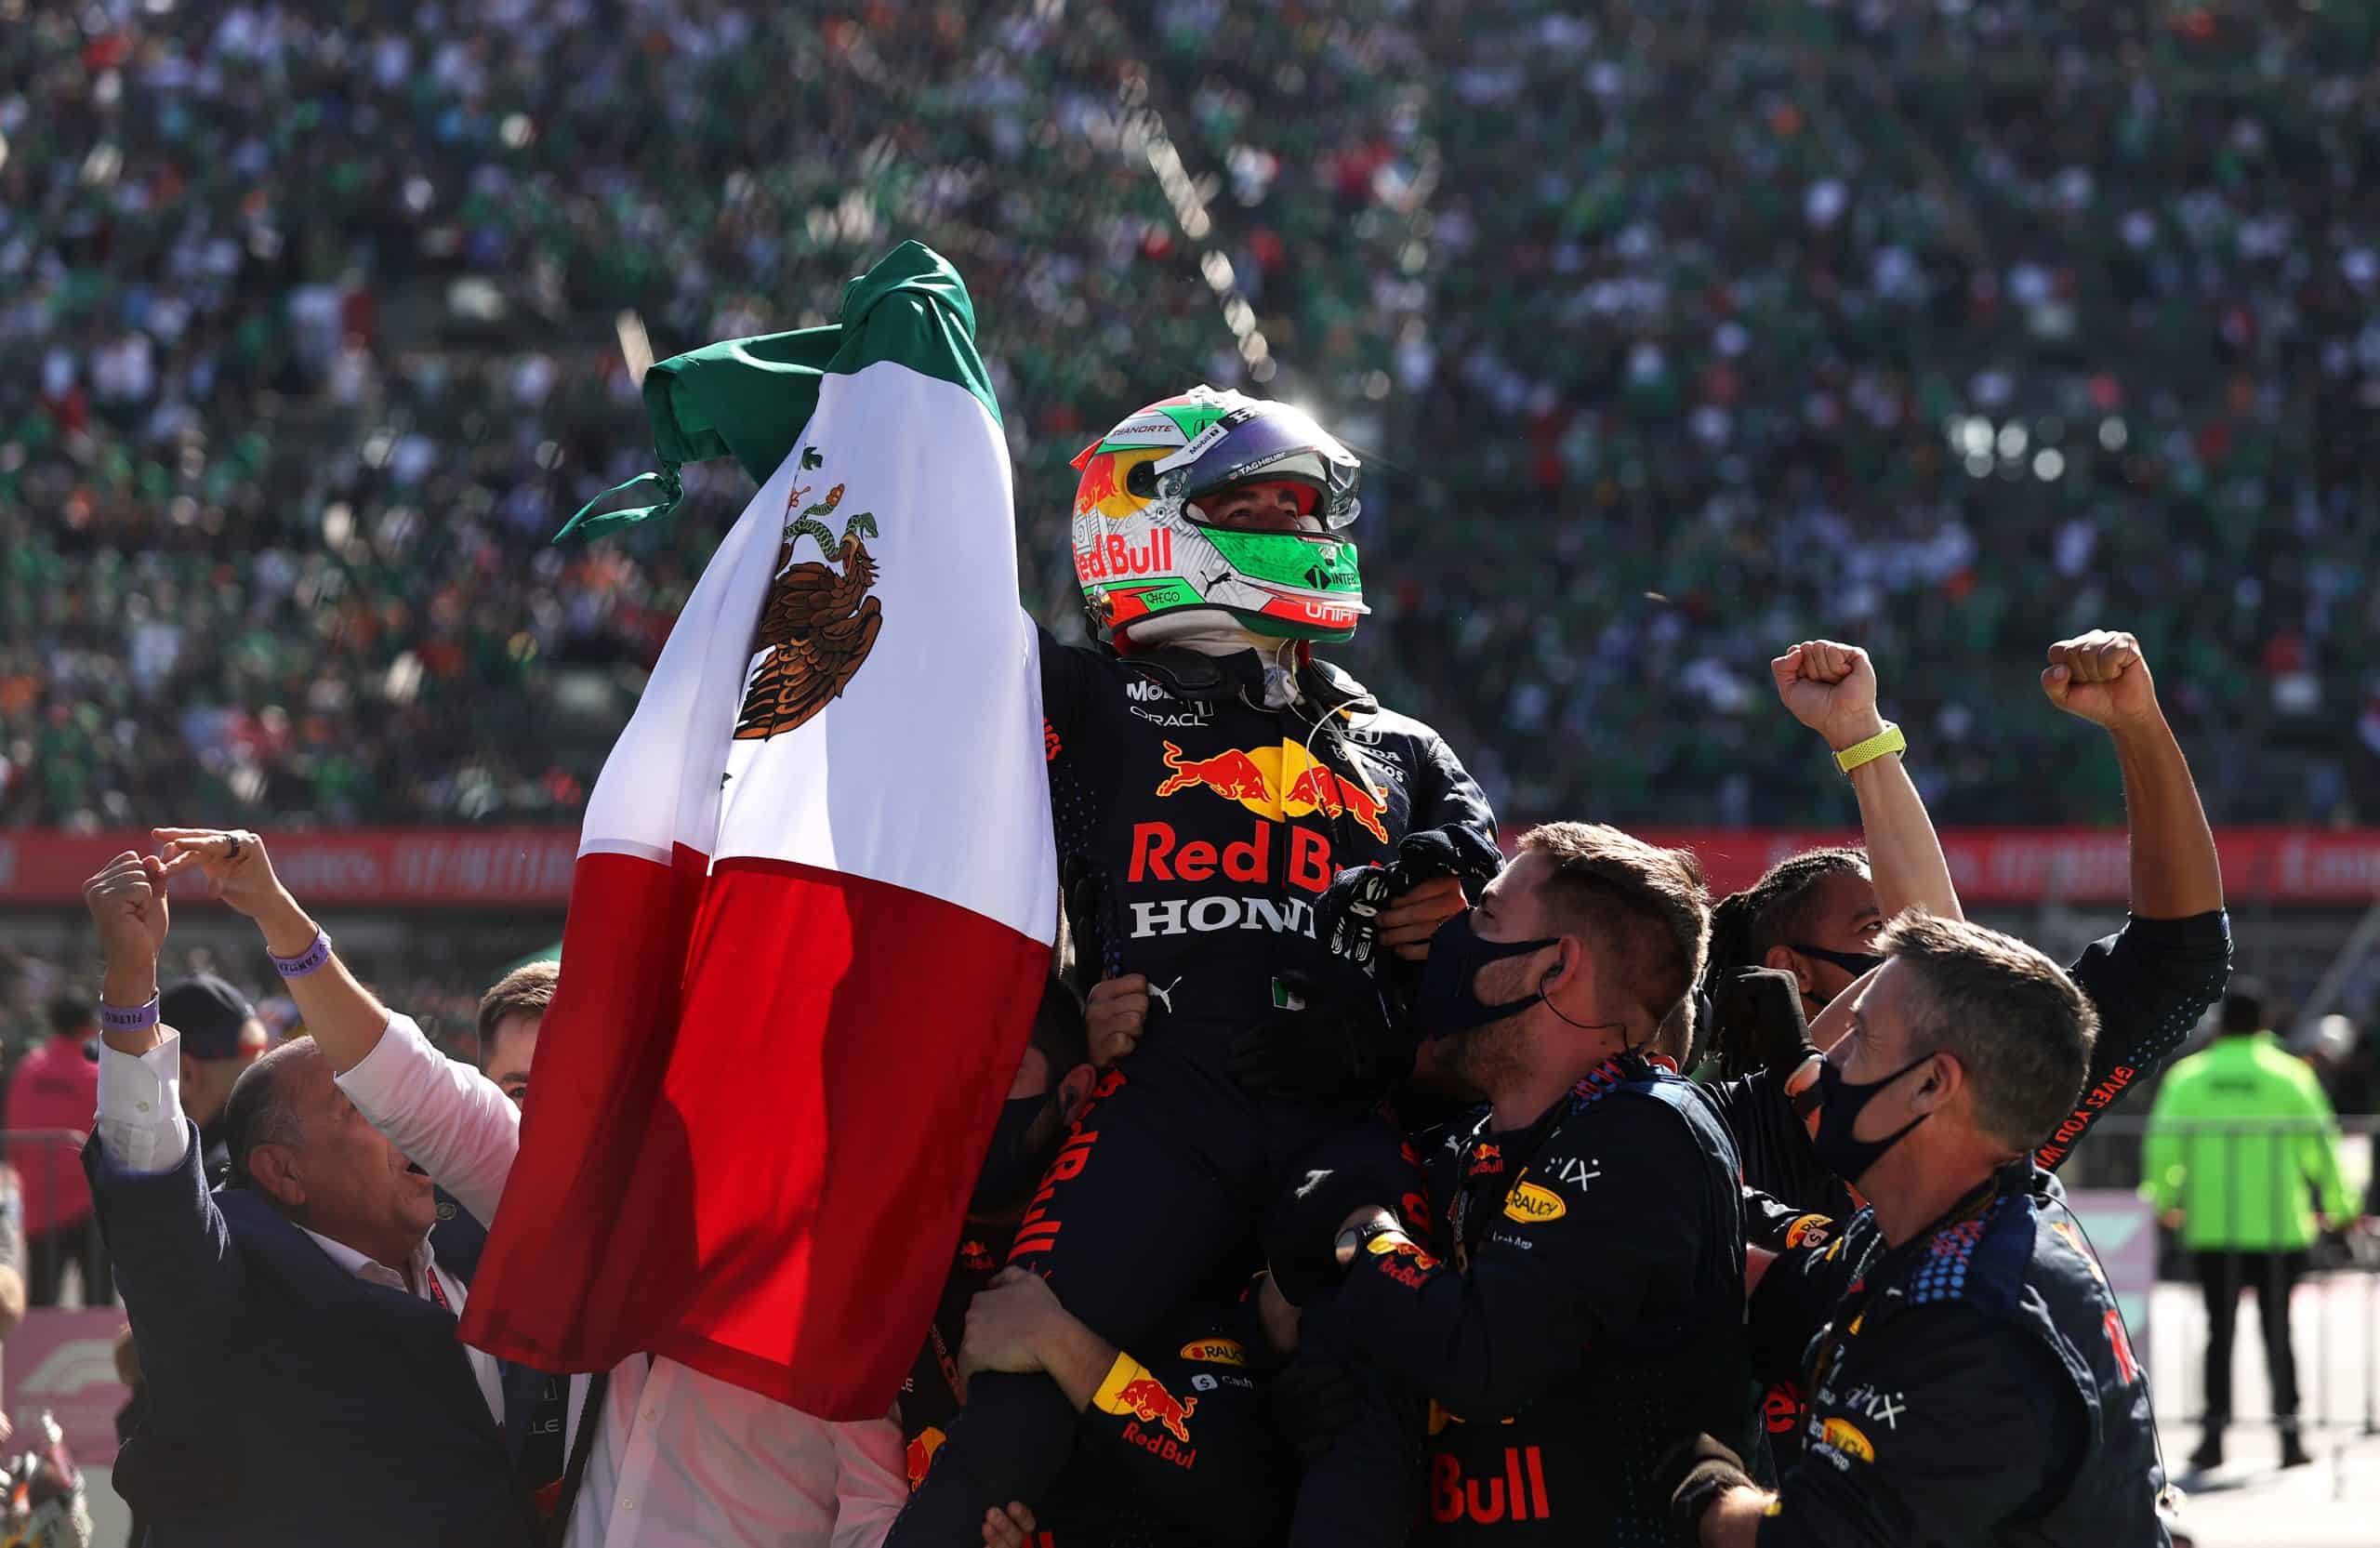 ¡Checo Pérez en el Podio! Obtiene el 3° lugar en el GP de México